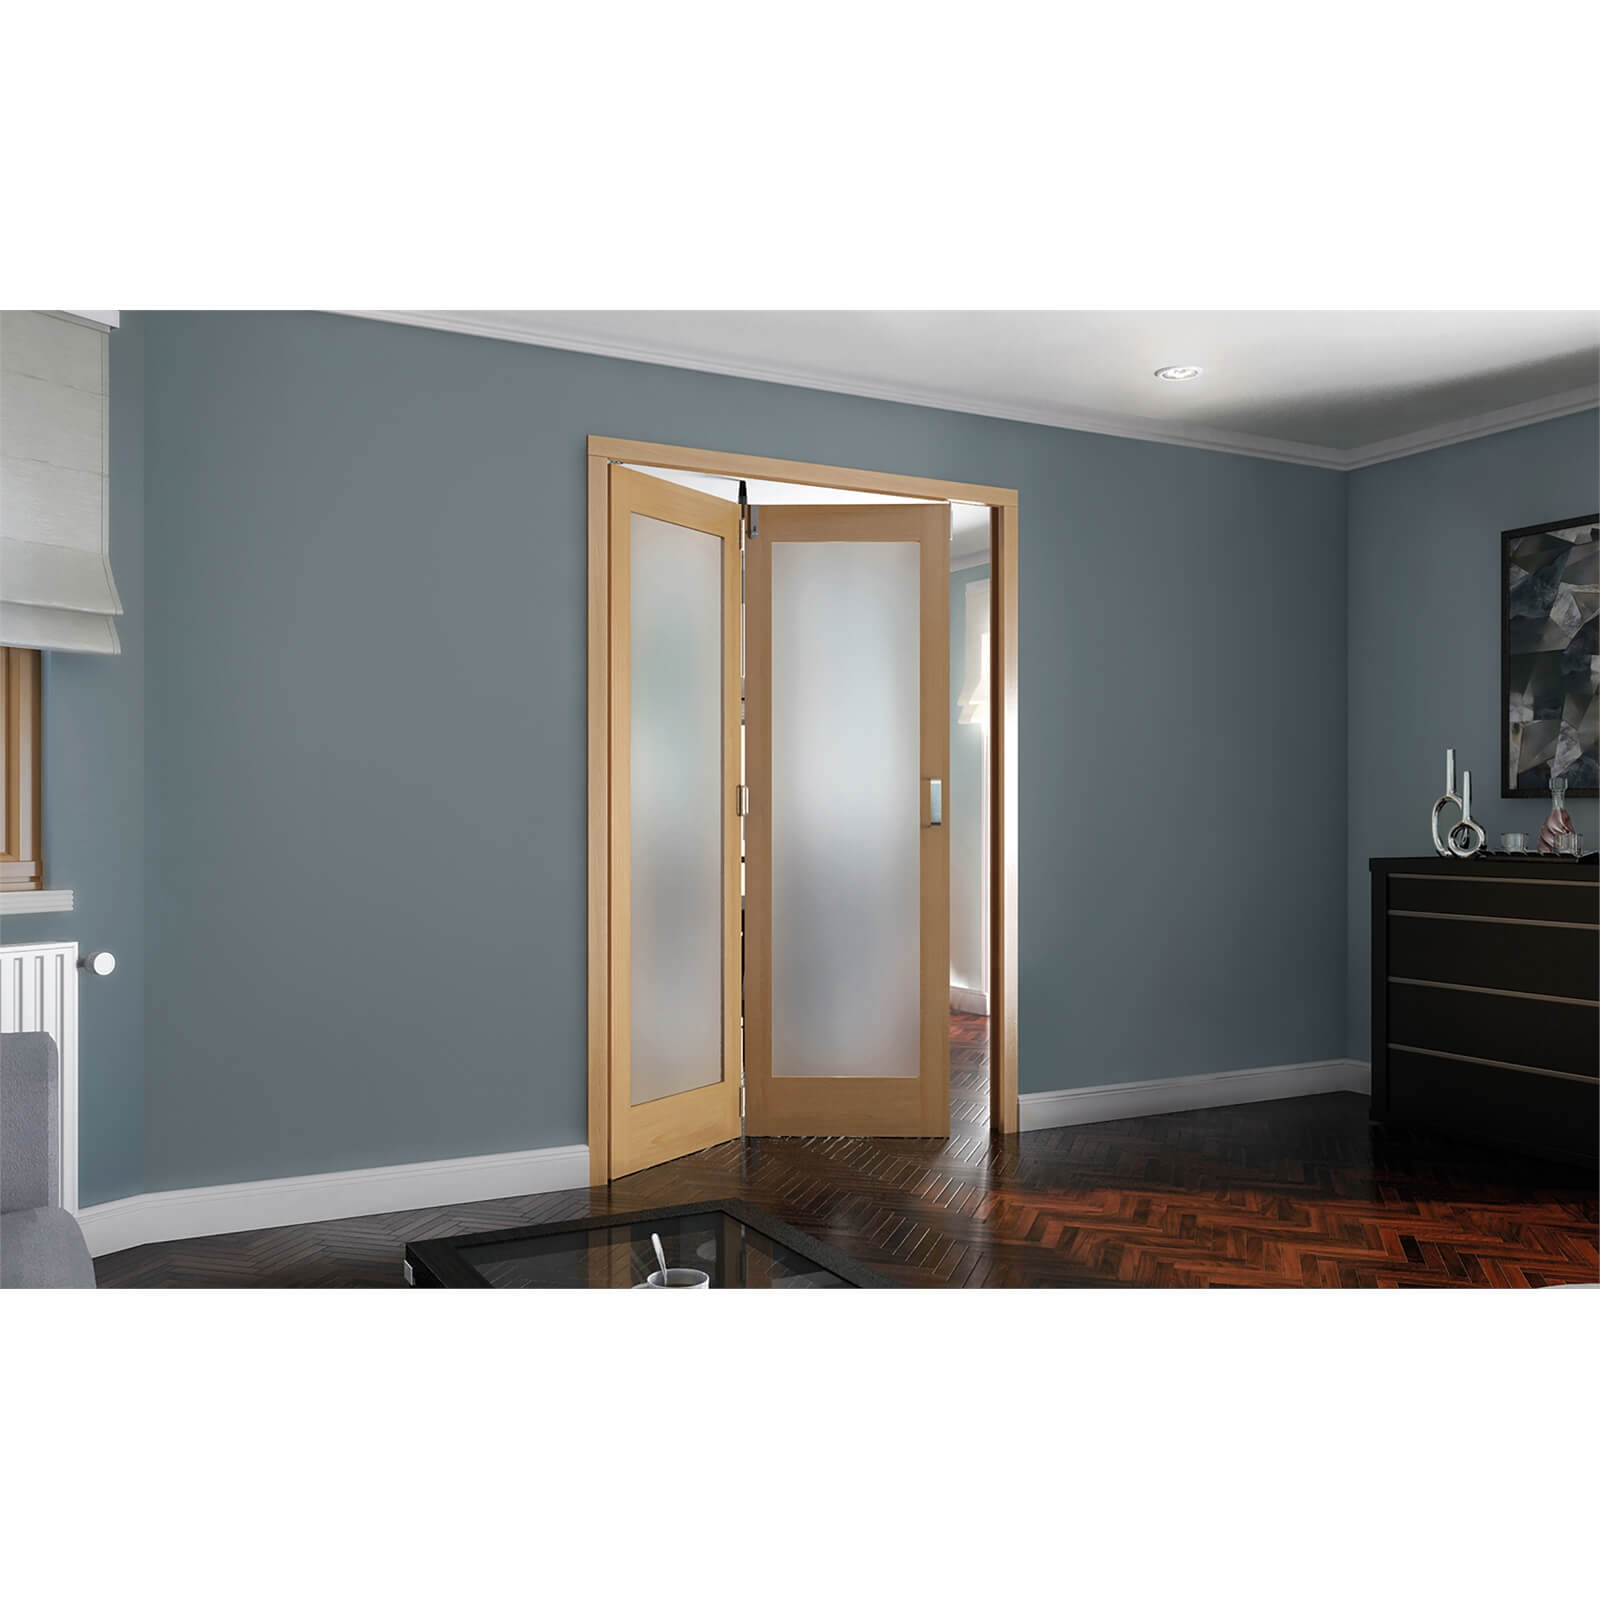 Photo of Shaker Oak 1 Light Obscure Glazed Interior Folding Doors 2 X 0 2047 X 1471mm